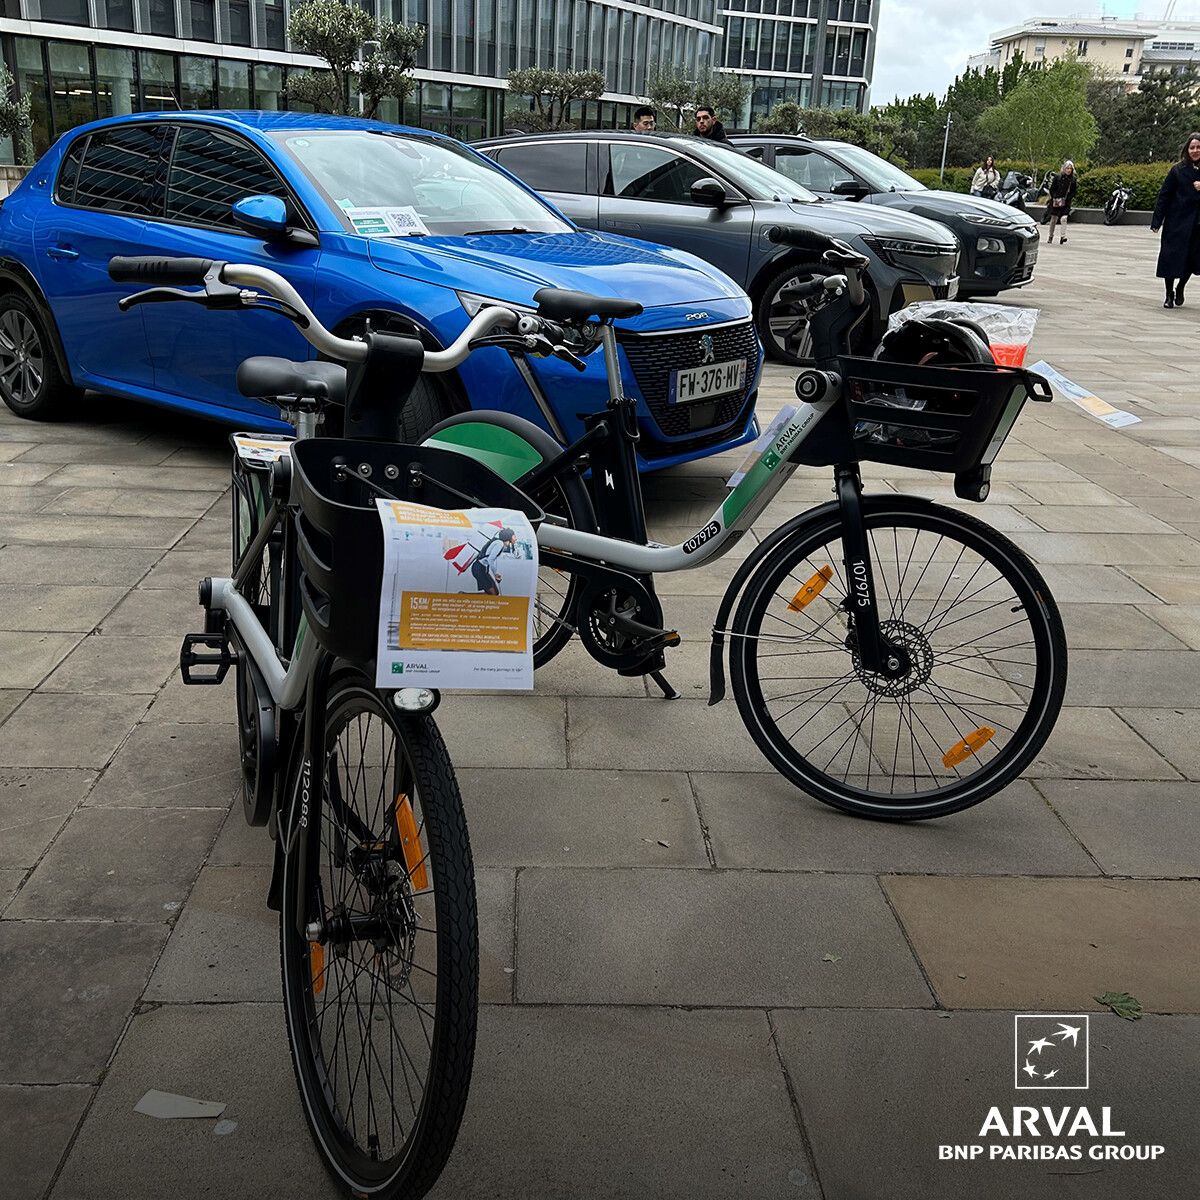 Ce mercredi, nos collaborateurs de Rueil-Malmaison ont pu découvrir l'évolution de notre application Arval CarSharing, qui intègre désormais le vélopartage en plus de l'autopartage !

#ArvalCarSharing #MobilitéDurable #Vélopartage #Autopartage